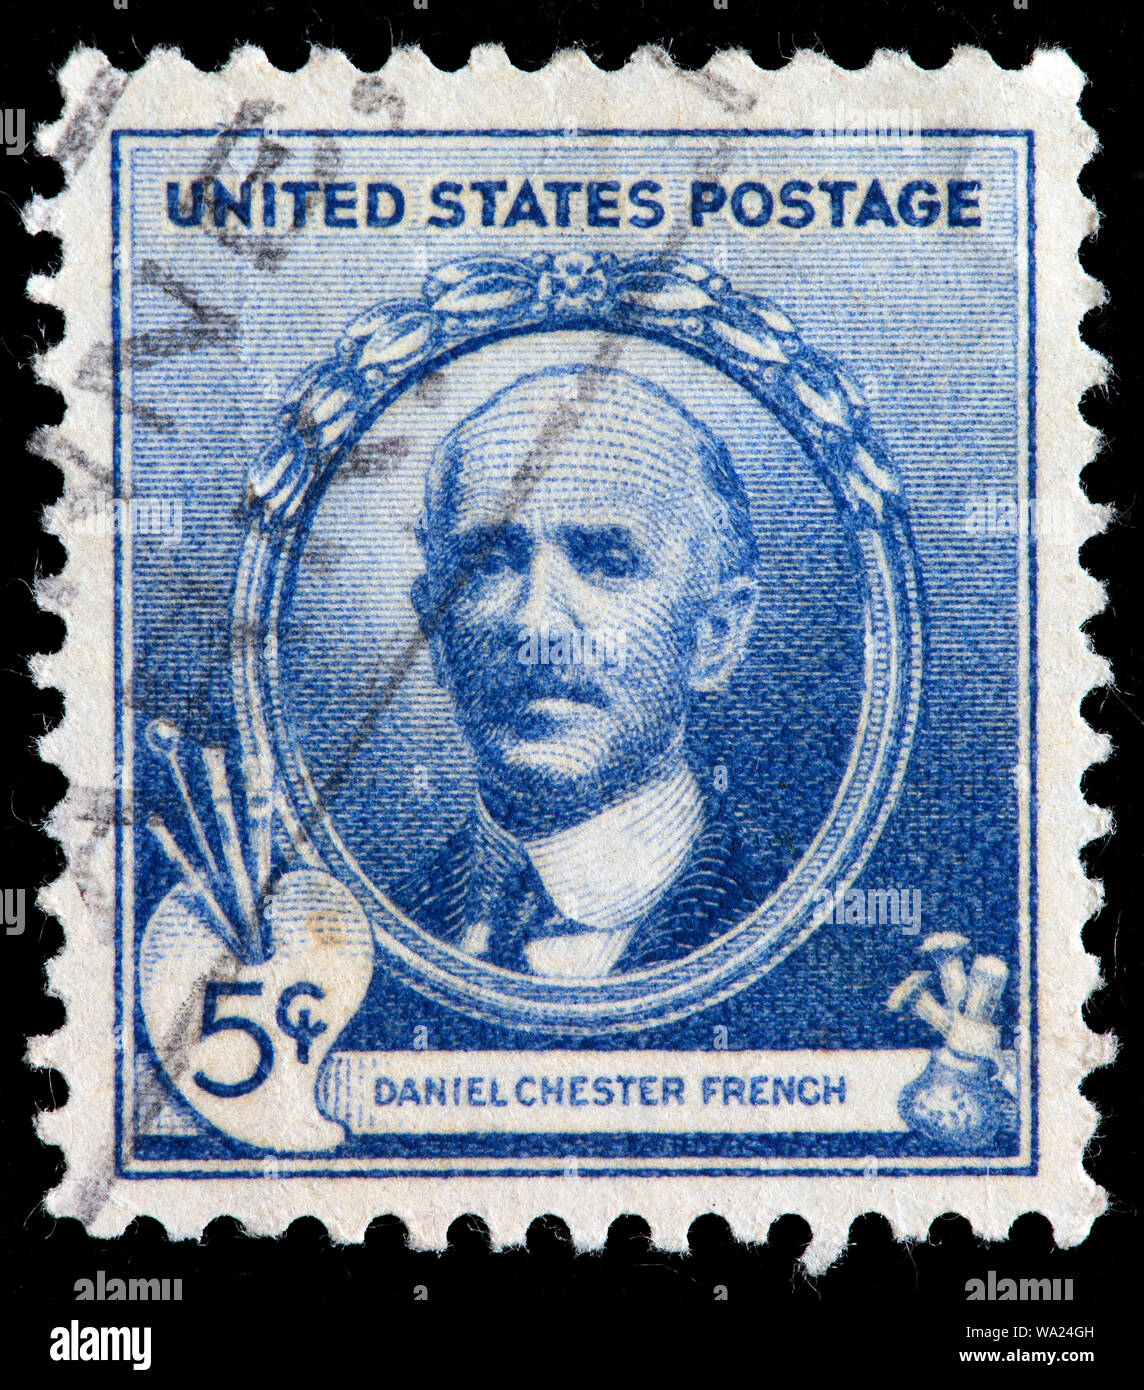 Daniel Chester French (1850-1931), US-amerikanischer Bildhauer, Briefmarke, USA, 1940 Stockfoto